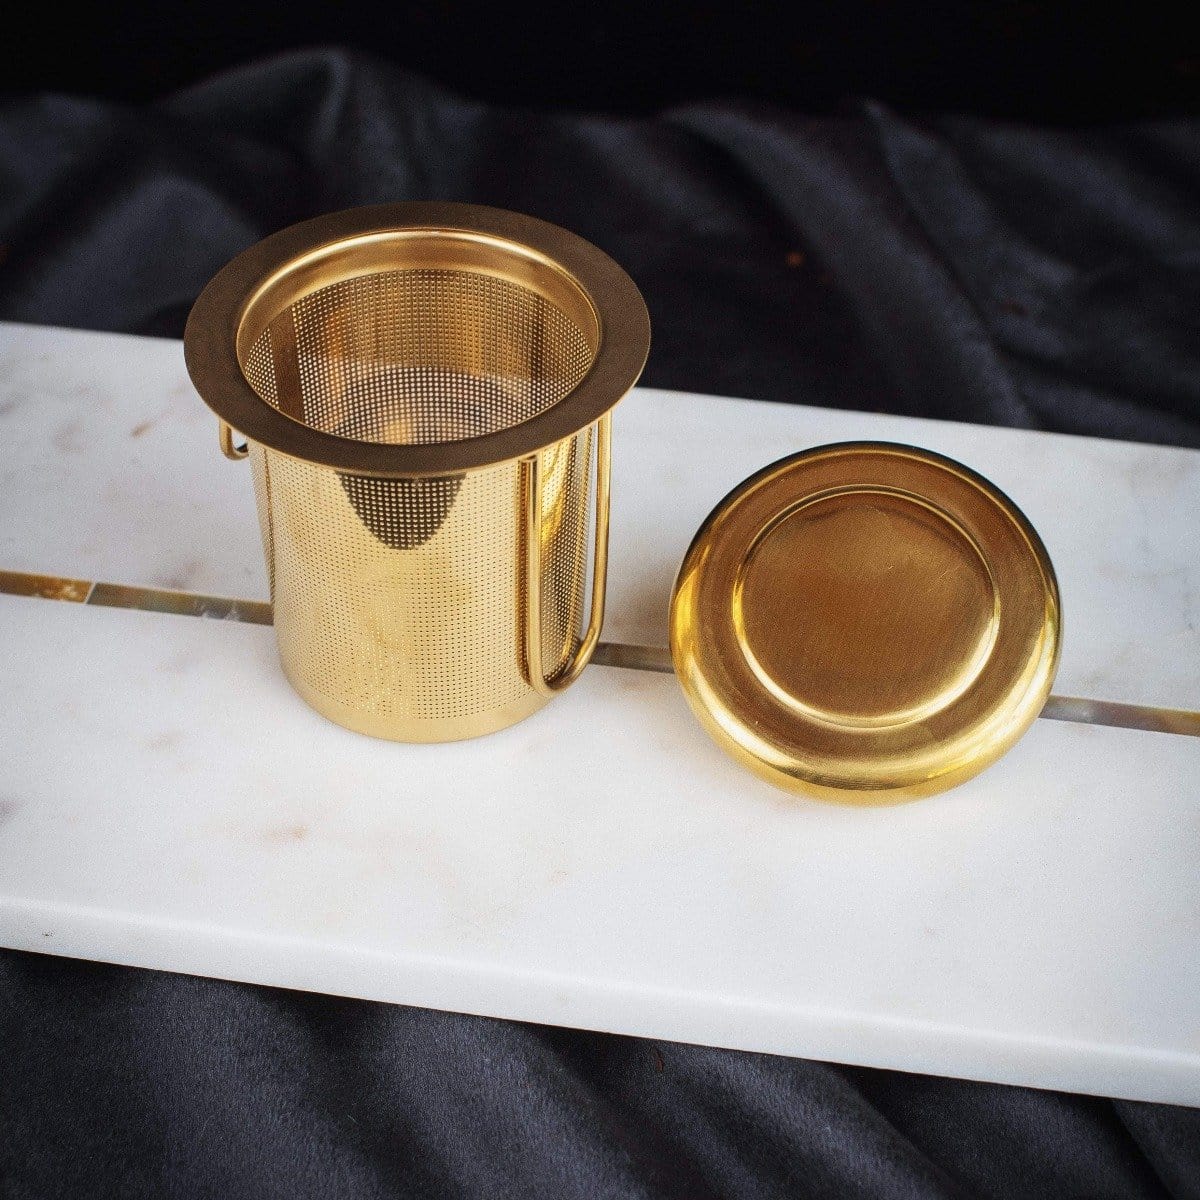 Midas Touch: Golden-Hued Tea Strainer